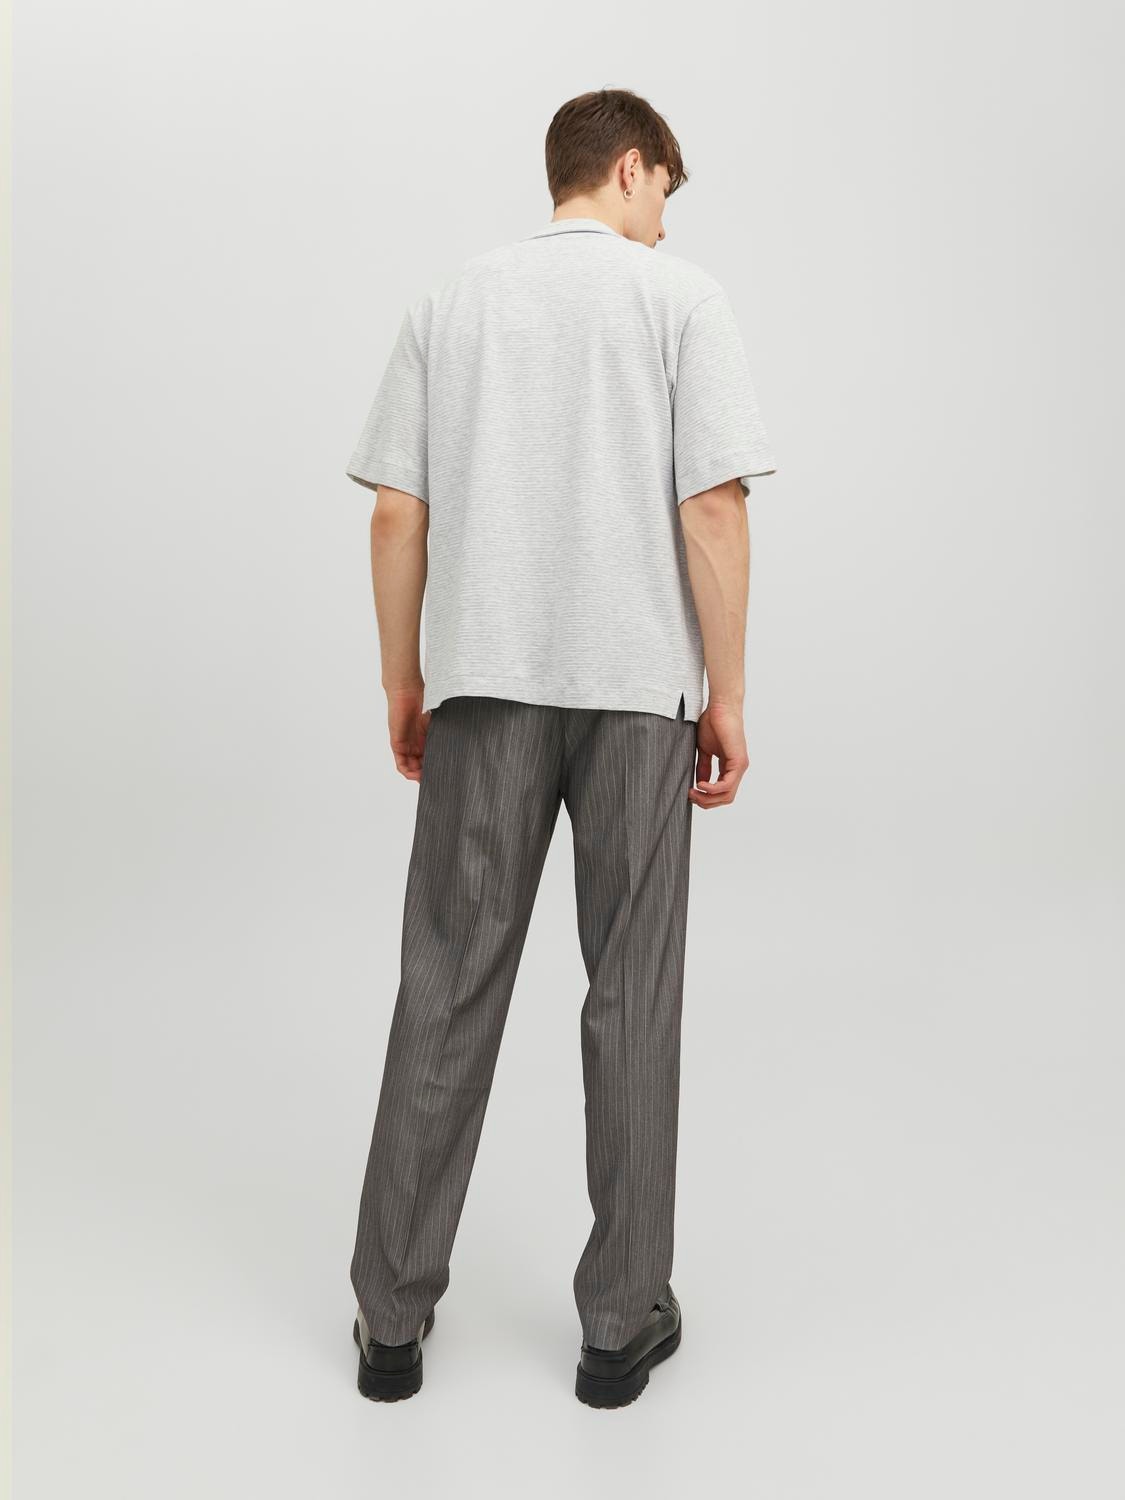 Jack & Jones Regular Fit Rekreační košile -Light Grey Melange - 12234801